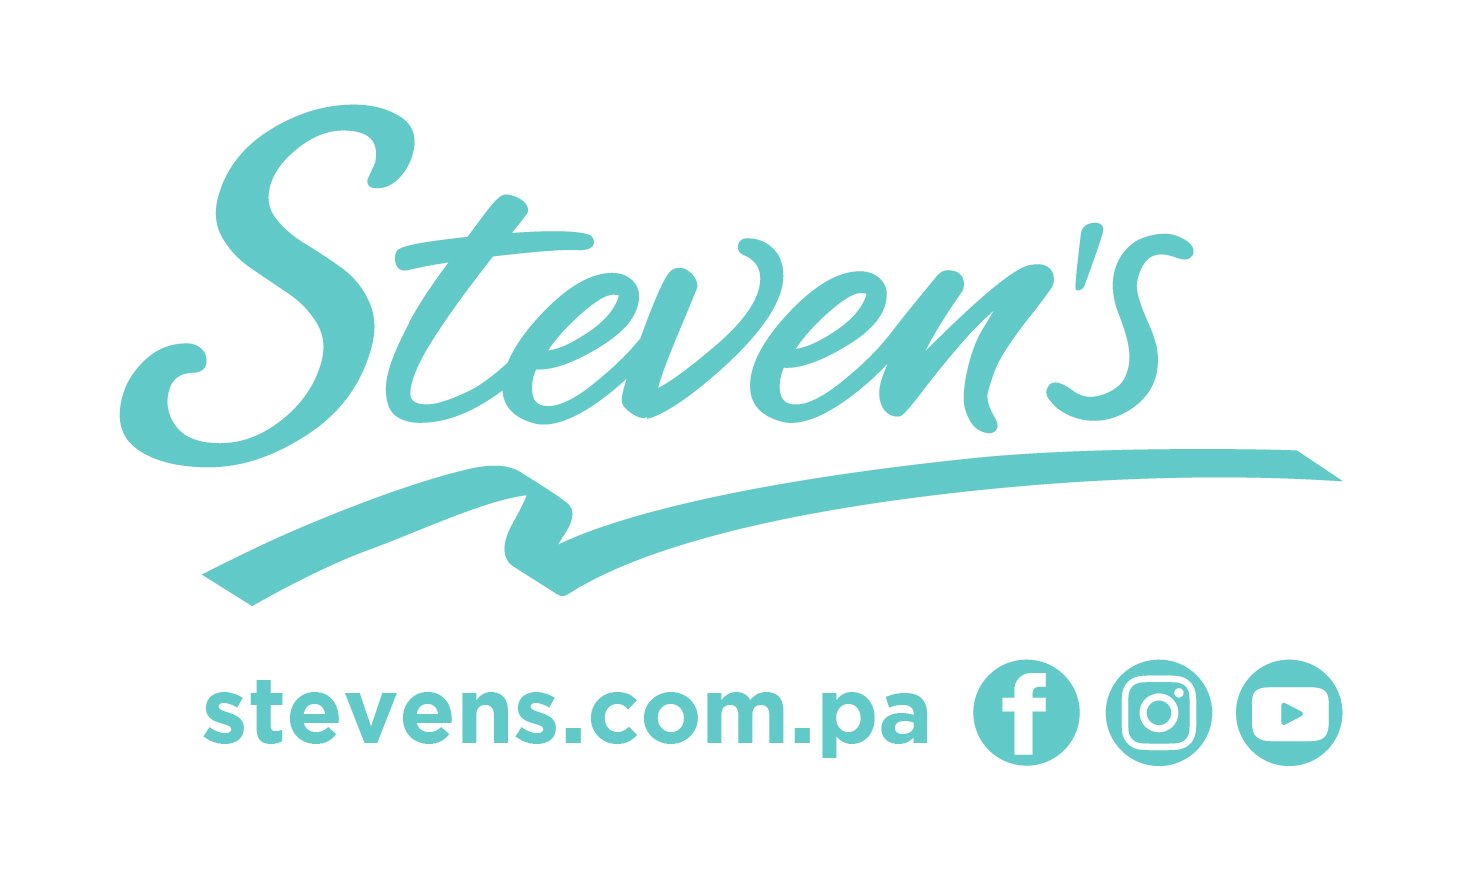 Steven’s